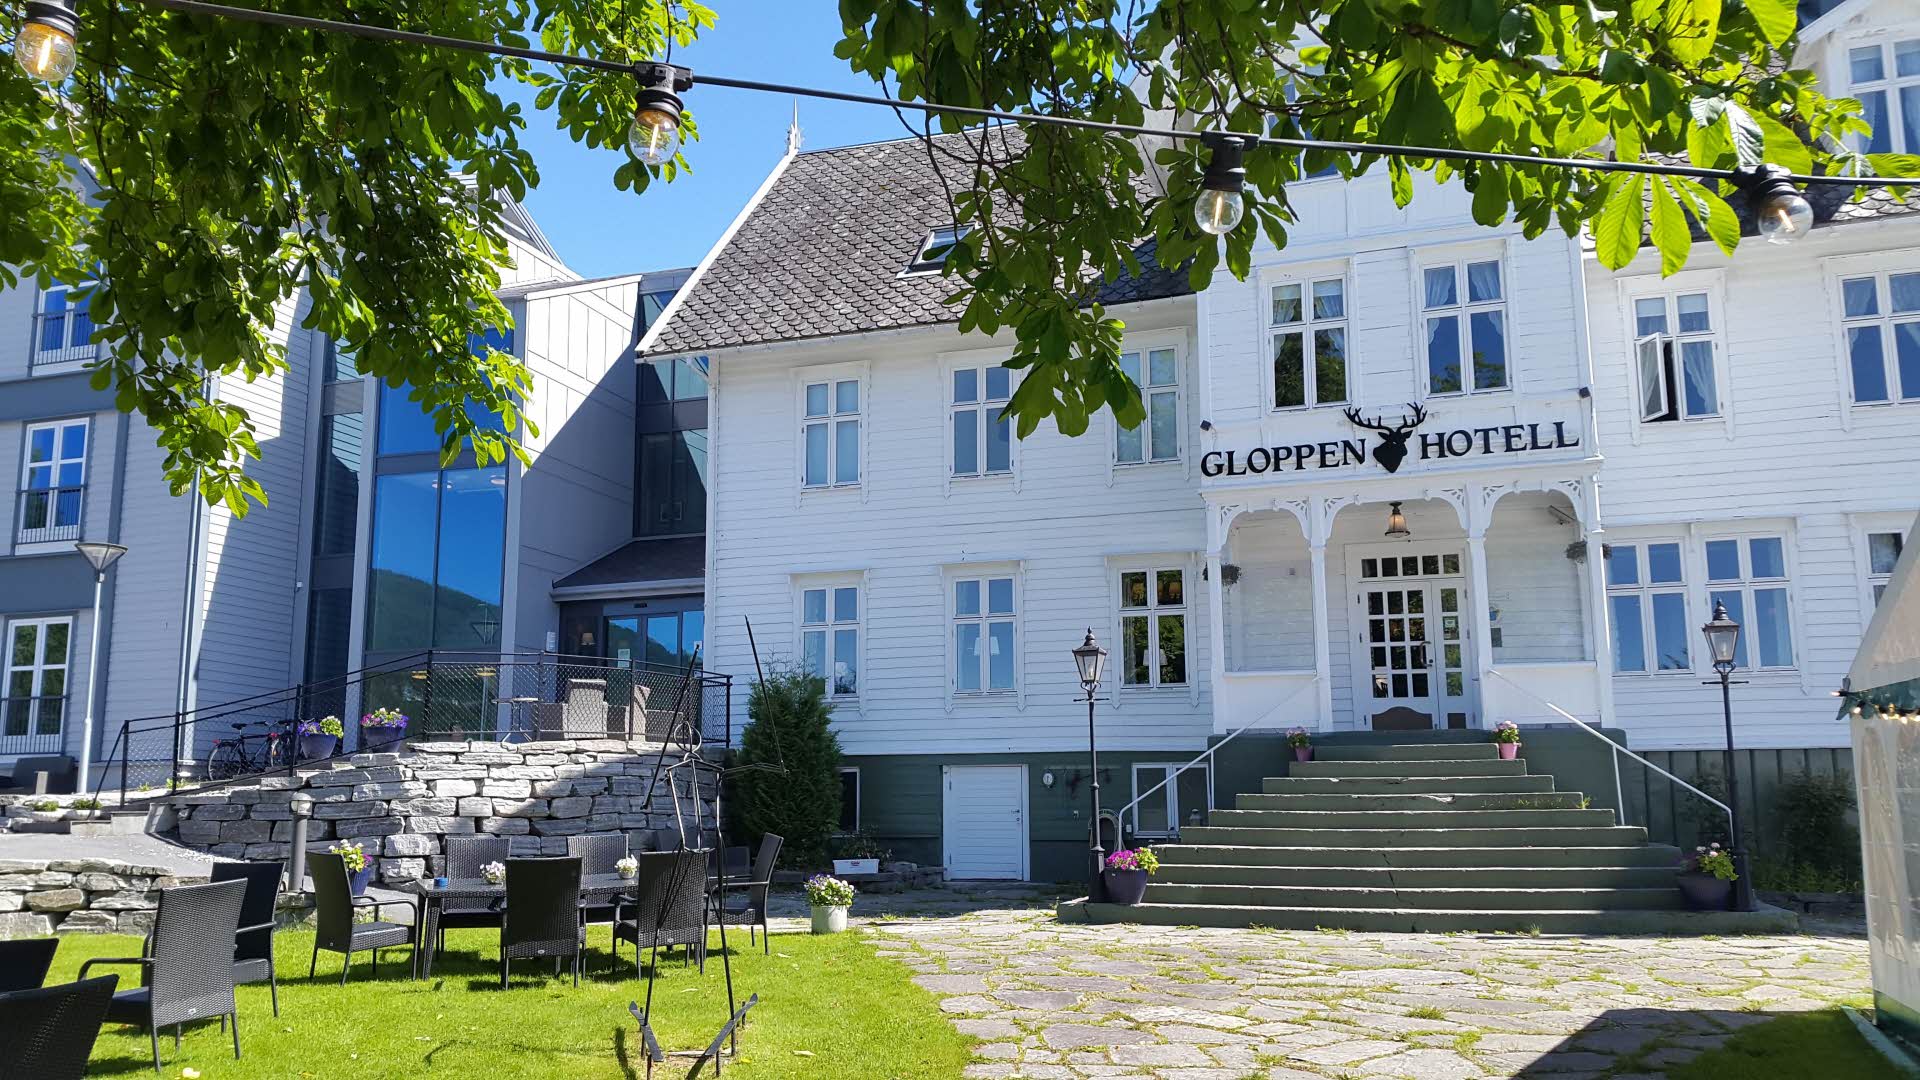 Foto exterior del Gloppen Hotell en un día de verano con sillas en el jardín y enmarcado en hojas verdes.